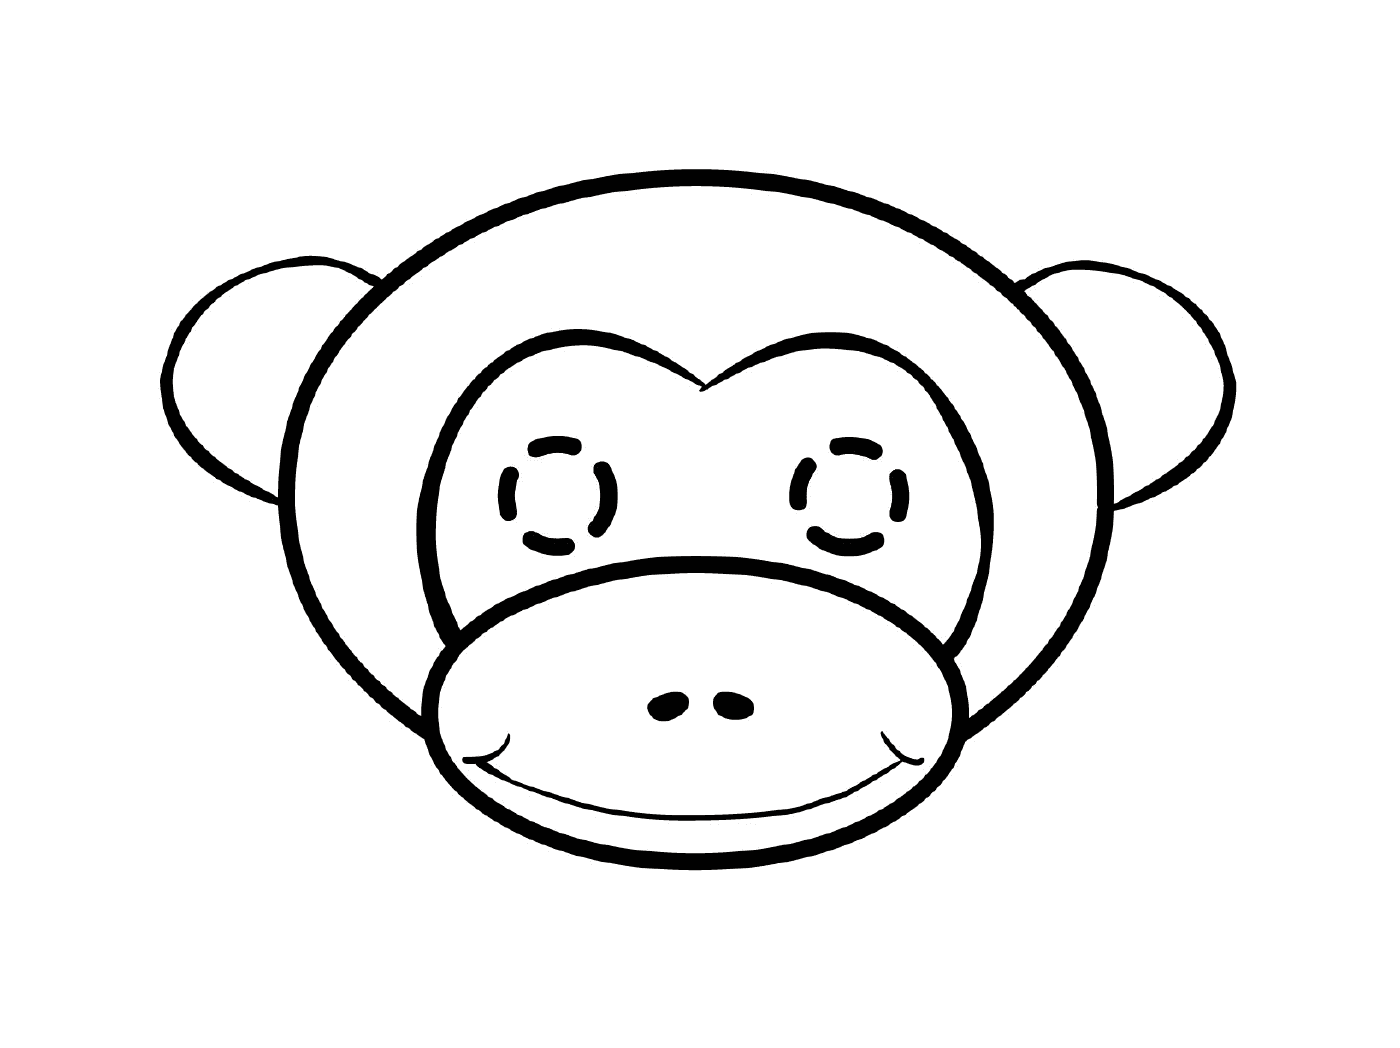   Tête de singe adorable 